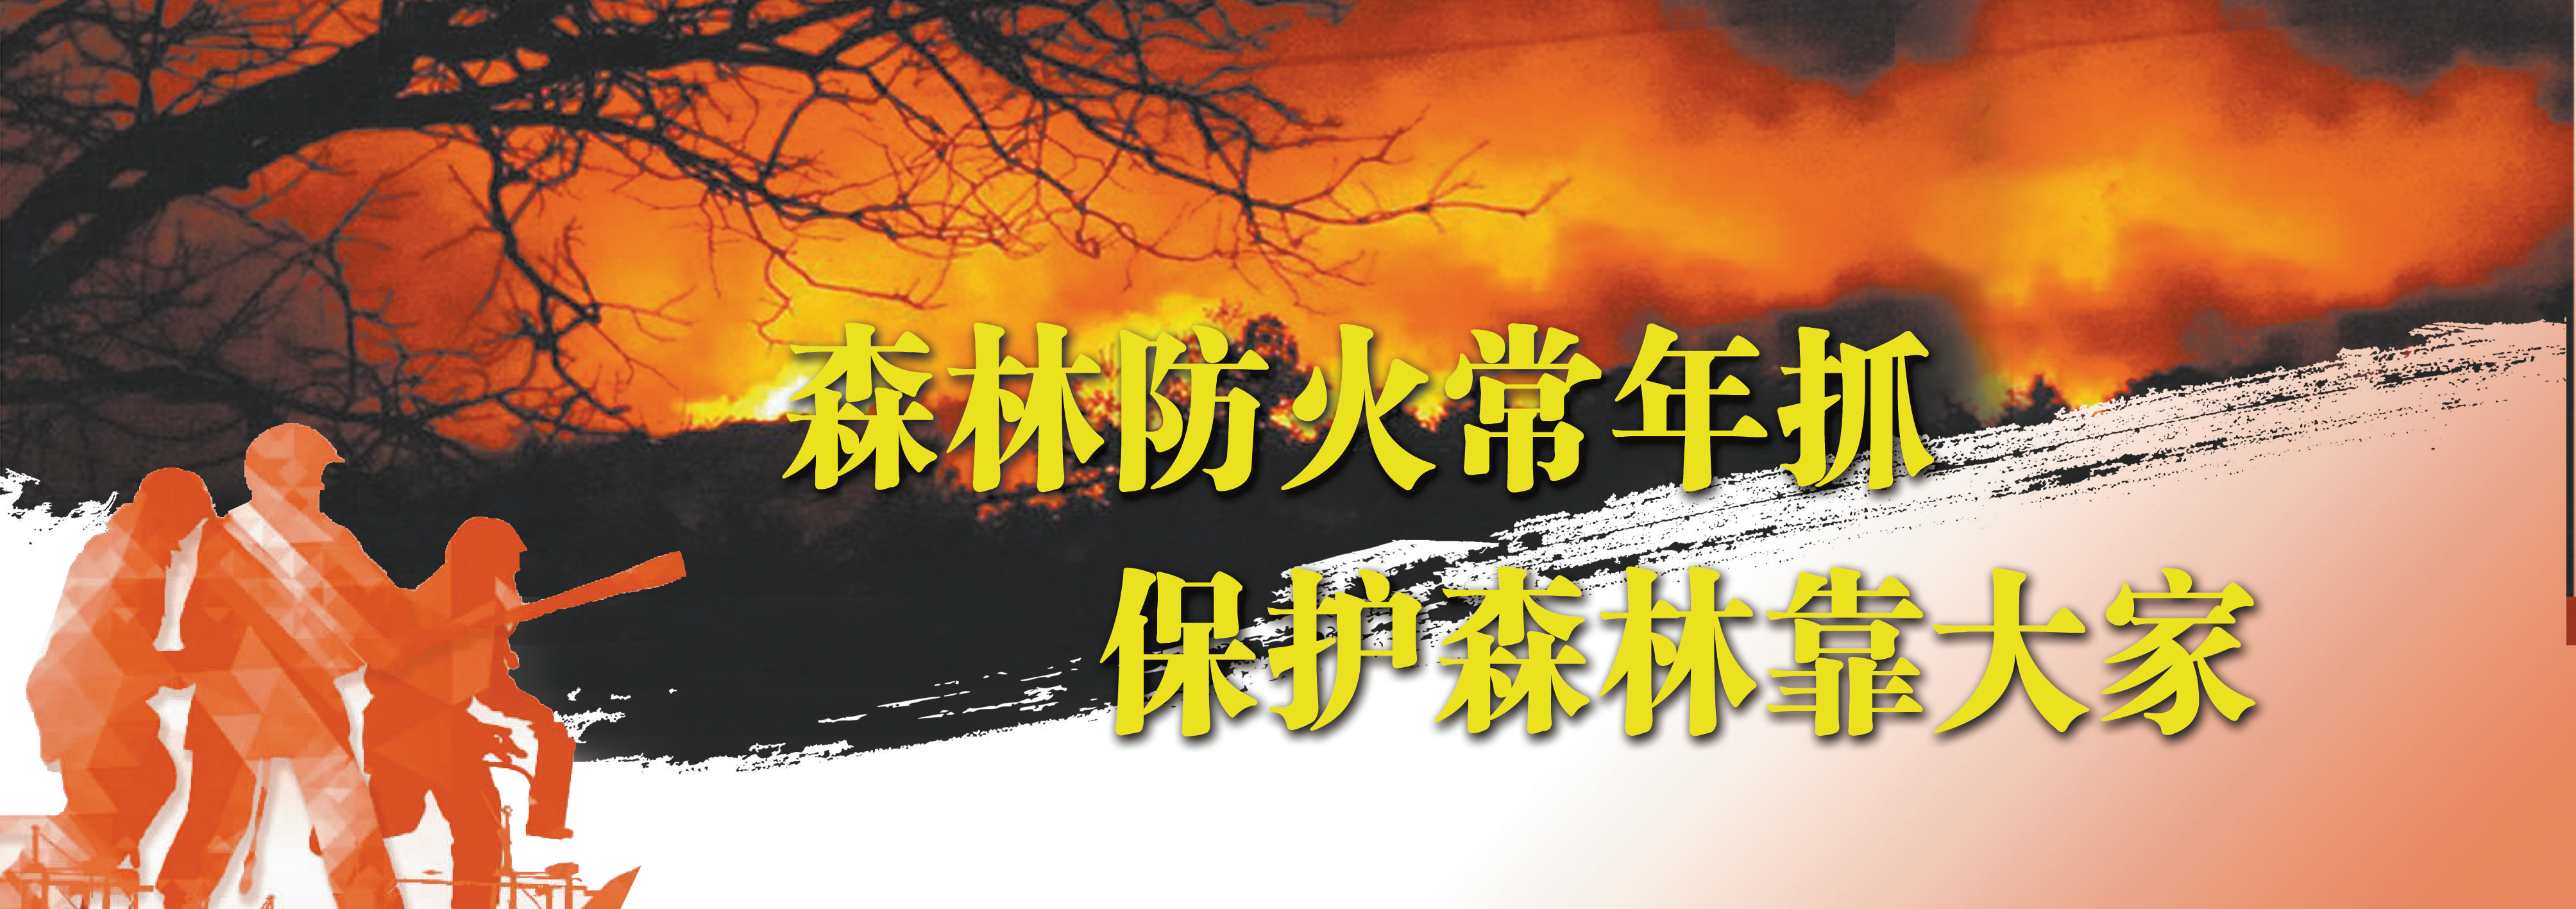 乐山日报公益广告——森林防火常年抓  保护森林靠大家(图1)